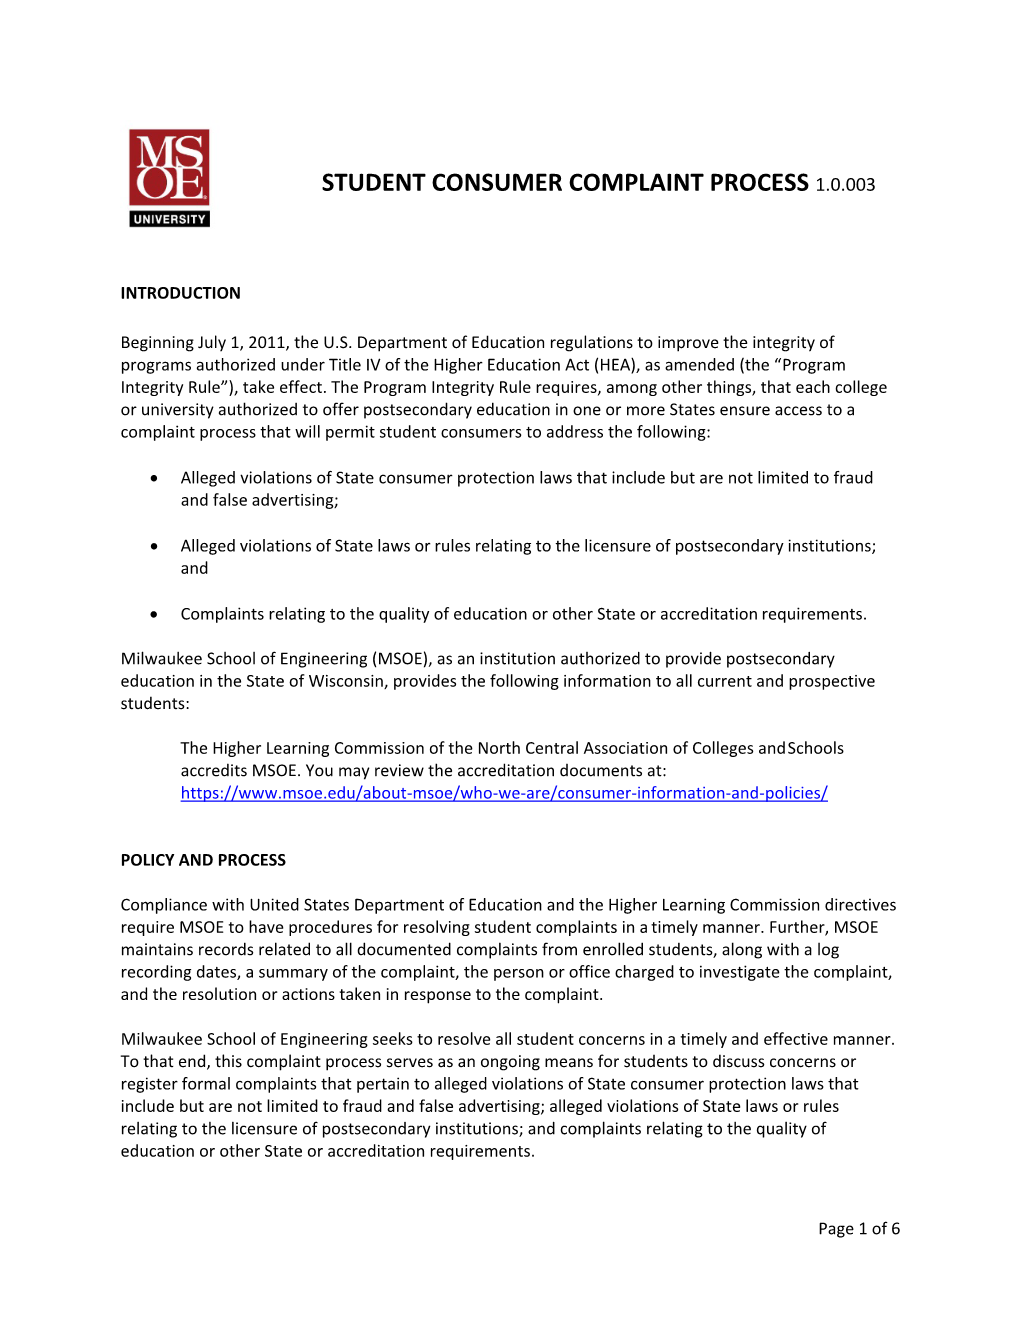 Student Complaint Process